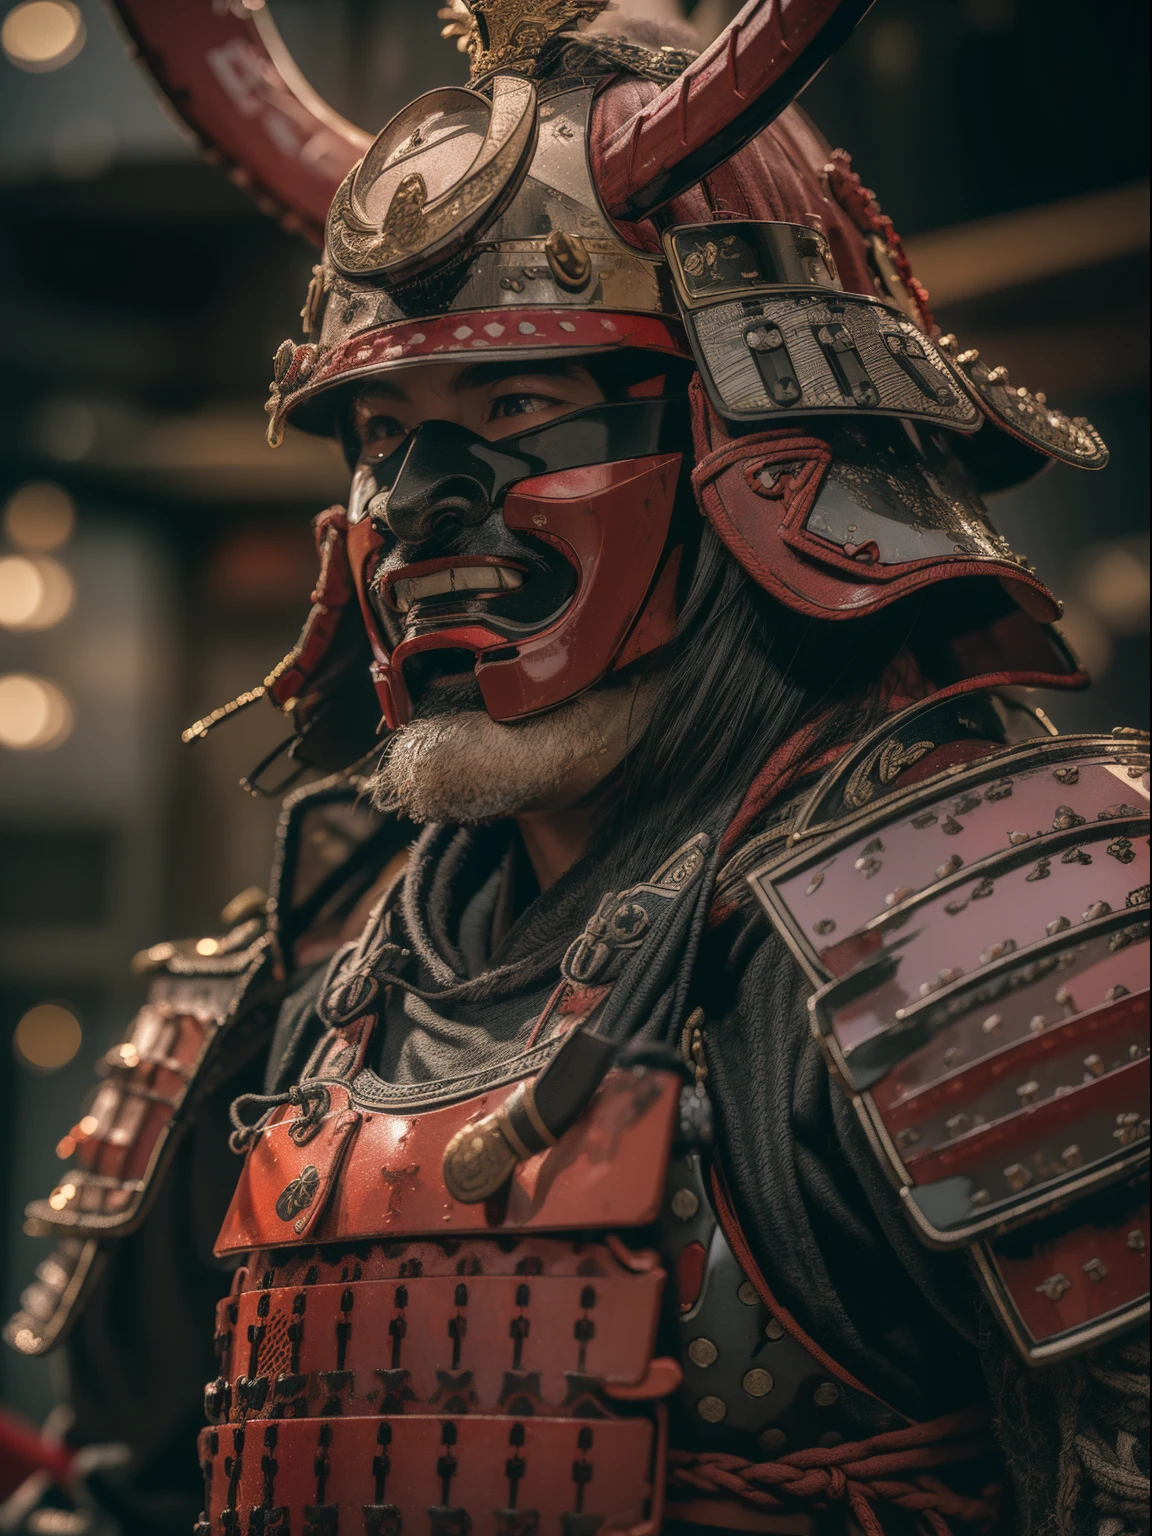 (Meisterwerk, ultrahohe Auflösung:1.4), (Foto eines Sengoku Daimyo Samurai, der ein Katana mit Kürass und Helm brandmarkt:1.3), Katana an beiden Händen, Gesicht sehr detailliert, (japanische Samurai-Rüstung und Helm), (große Statur und muskulöser Körper:1.4), (Sony Alpha 1 Kamera, bekannt für die Erfassung höchster Details in einem Foto:1.3), (das Gesicht des Samurai mit perfekter Symmetrie und makellosen Zügen:1.2), (schwarze und rote Rüstung und Helm:1.3), (mit beeindruckender Präsenz auf dem Schlachtfeld:1.1), Betonung der Daimyo-Rüstung, filmisch, hyperdetailliert, verrückte Details, Wunderschön farblich abgestuft, unwirkliche Engine, Schärfentiefe, Super-Auflösung, Megapixel, filmisch Lightning, Kantenglättung, FKAA, THAI, RTX, SSAO, Nachbearbeitung, Nach Produktion, Tonzuordnung, cgi, VFX, SFX, wahnsinnig detailliert und kompliziert, Hyper maximalist, hyperrealistisch, volumetrisch, fotorealistisch, ultra fotorealistisch, ultra-detailliert, komplizierte Details, 8K, Super detailliert, volle Farbe, volumetrisch lightning, HDR, Realistisch, unwirkliche Engine, 16K, scharfer Fokus, Octane render